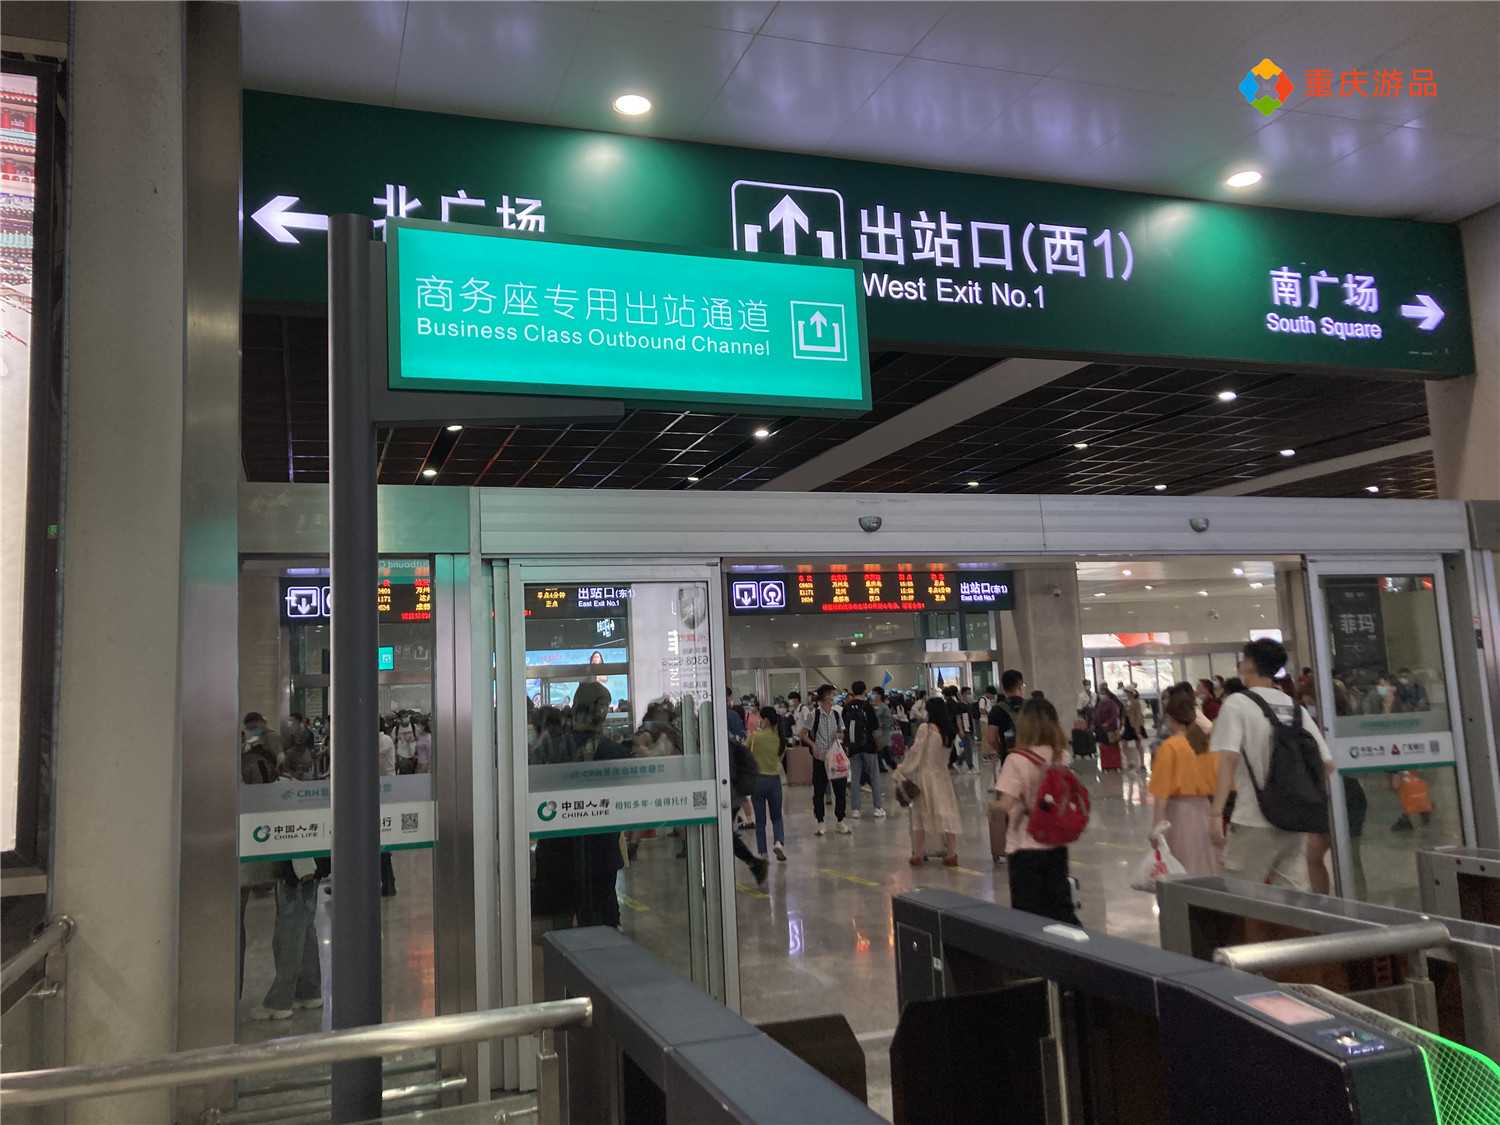 重庆游品 的想法: 重庆北站,出站口设立了单独的商务